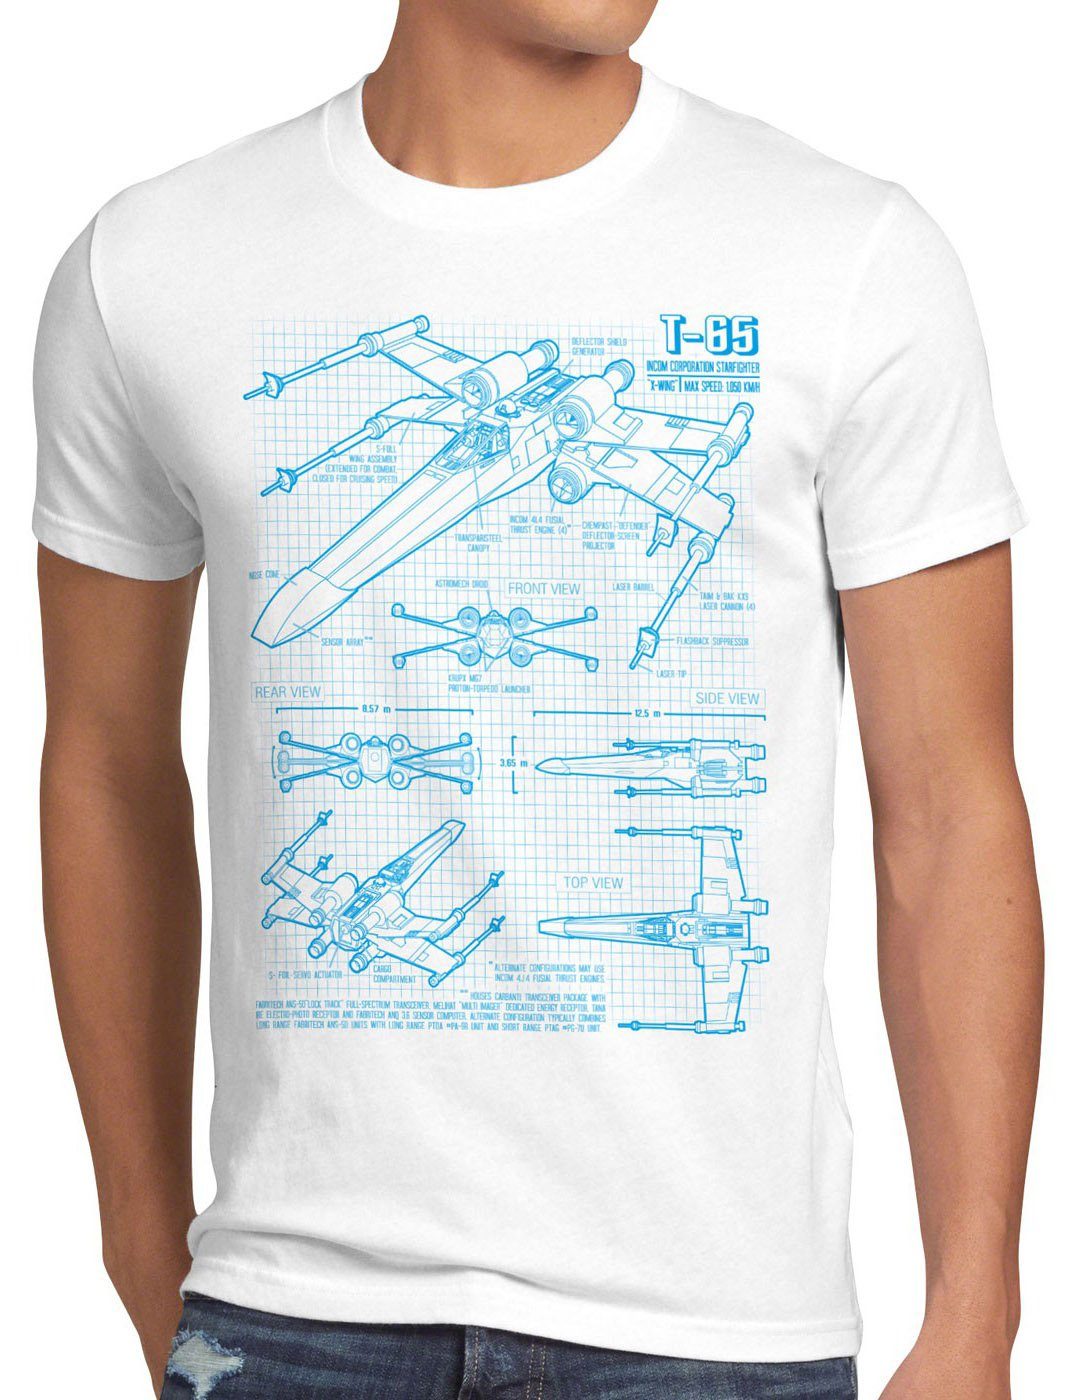 style3 Print-Shirt T-65 Jäger Herren T-Shirt wing star darth wars rebellion battlefront x-flühler weiß